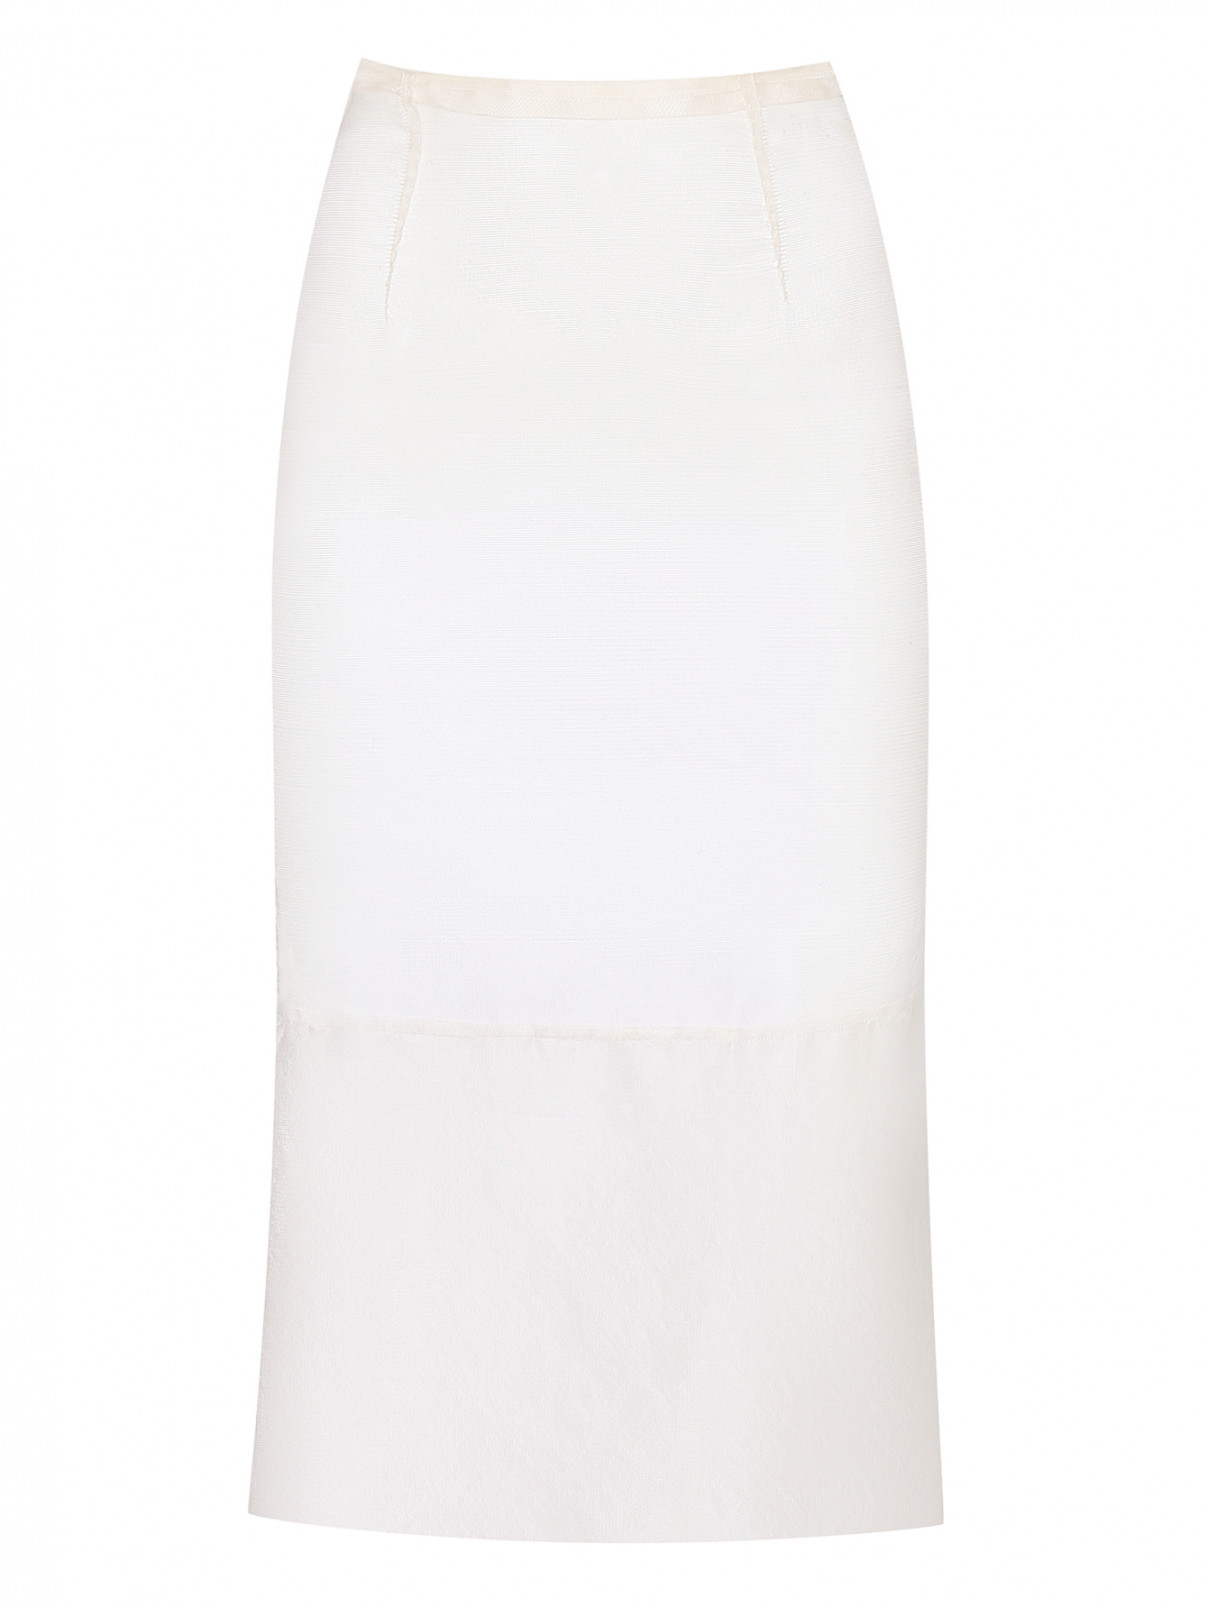 Нижняя юбка из шелка Costume National  –  Общий вид  – Цвет:  Белый